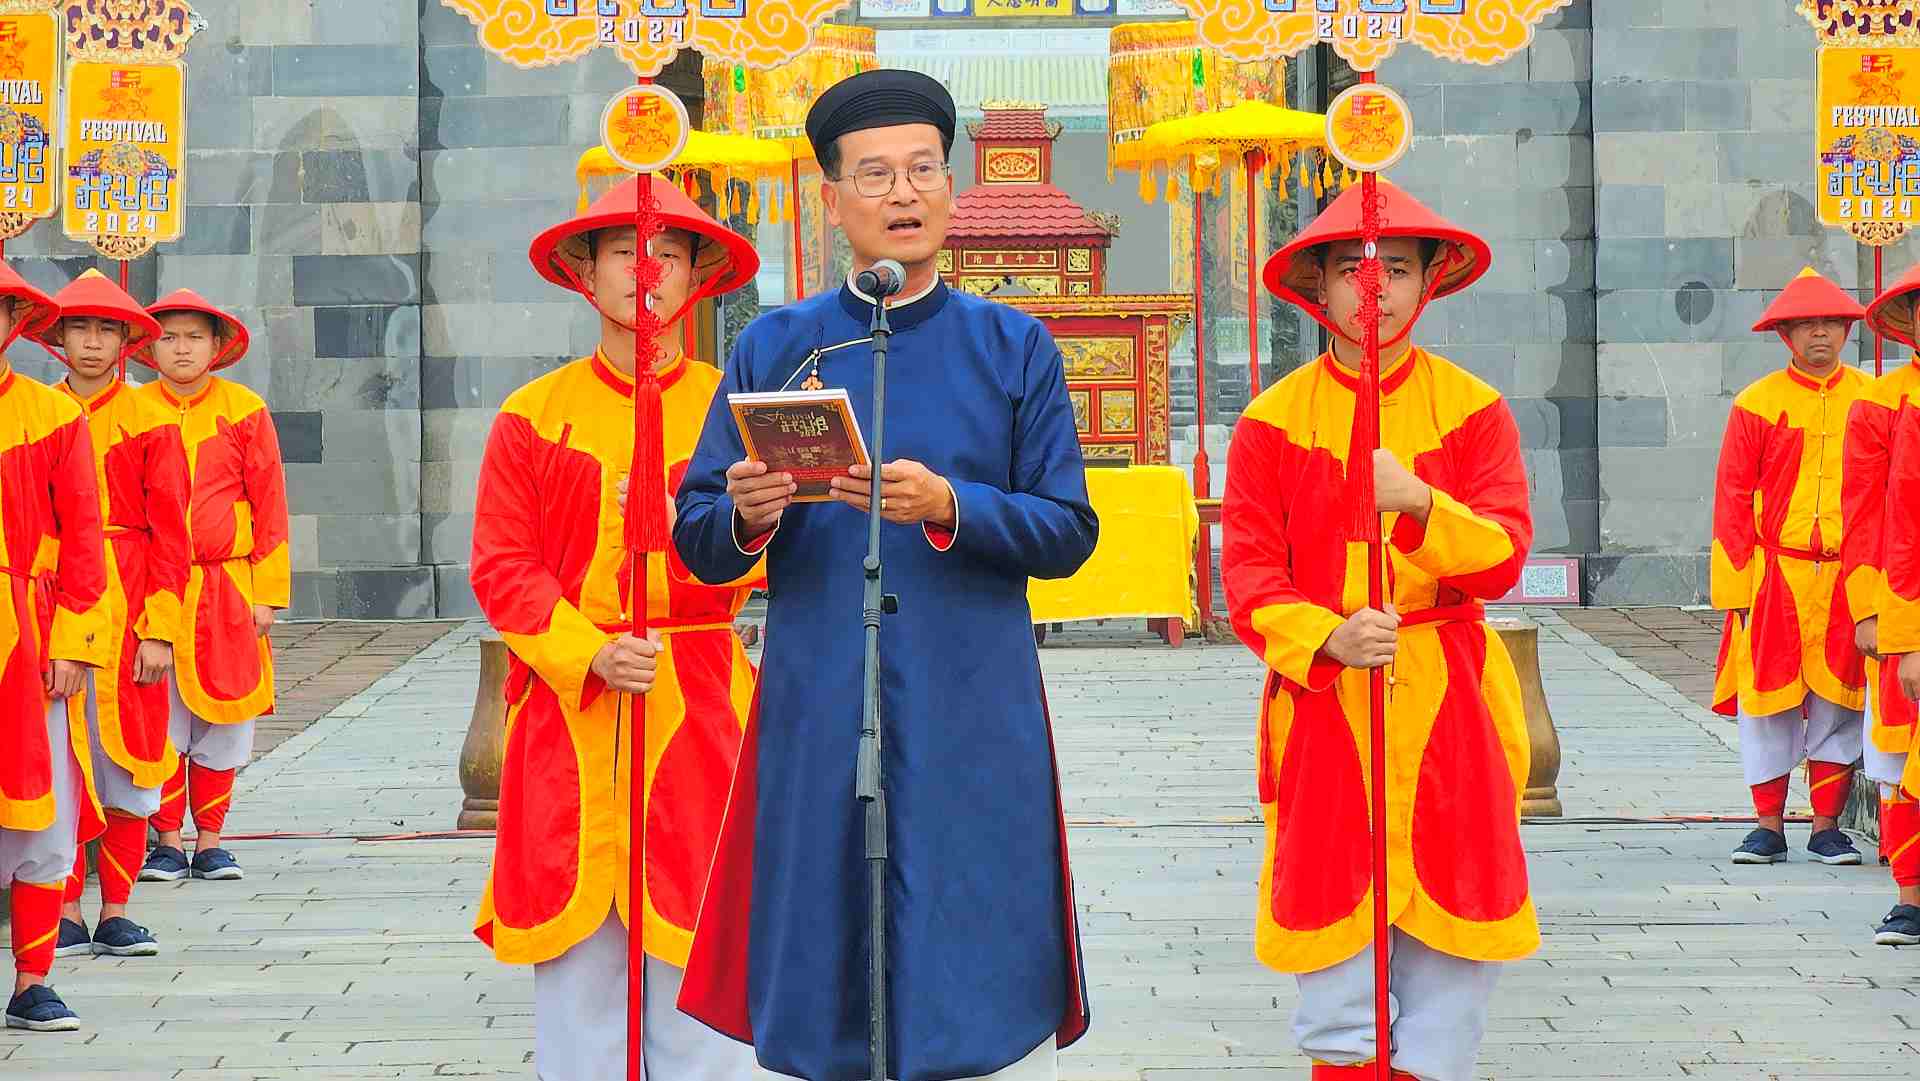 Theo đó, Ban Sóc là lễ phát lịch ngày xưa của triều Nguyễn, được tổ chức định kỳ vào cuối năm âm lịch. 